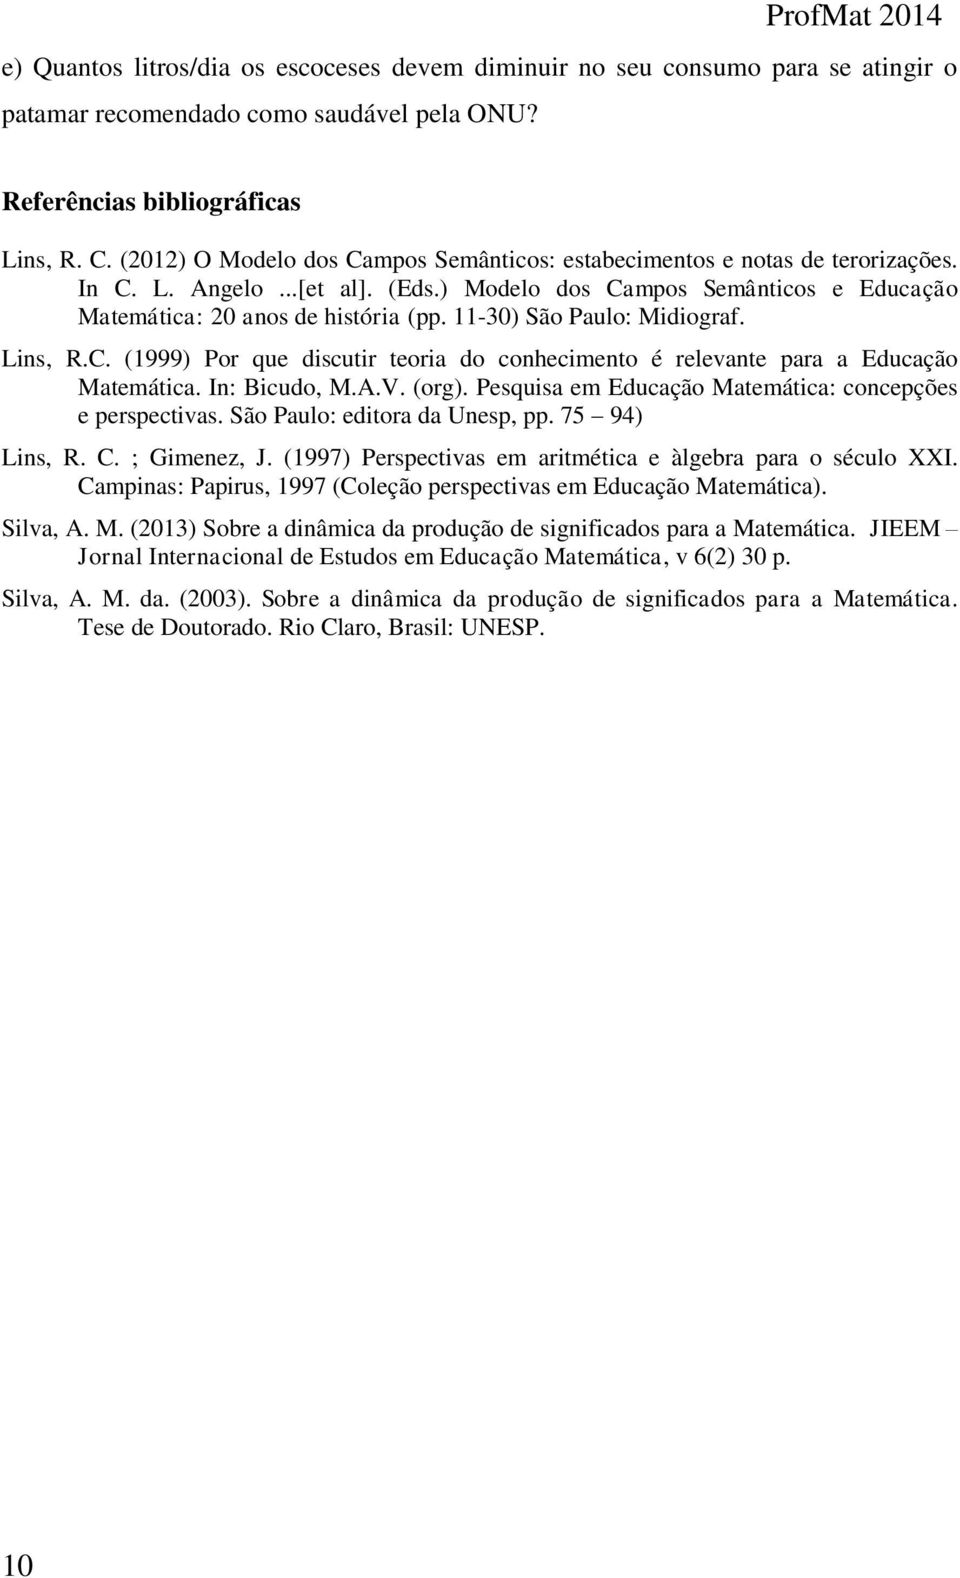 11-30) São Paulo: Midiograf. Lins, R.C. (1999) Por que discutir teoria do conhecimento é relevante para a Educação Matemática. In: Bicudo, M.A.V. (org).